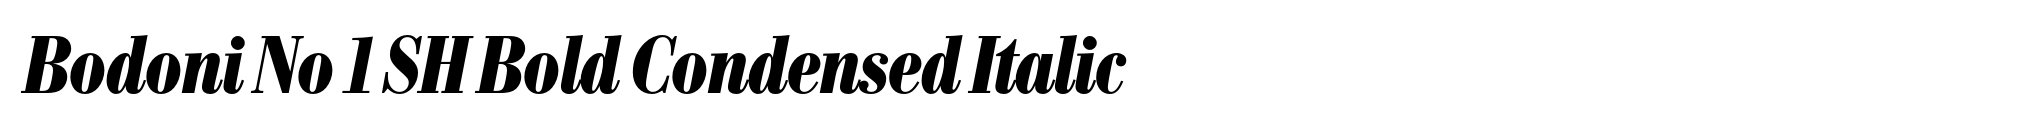 Bodoni No 1 SH Bold Condensed Italic image